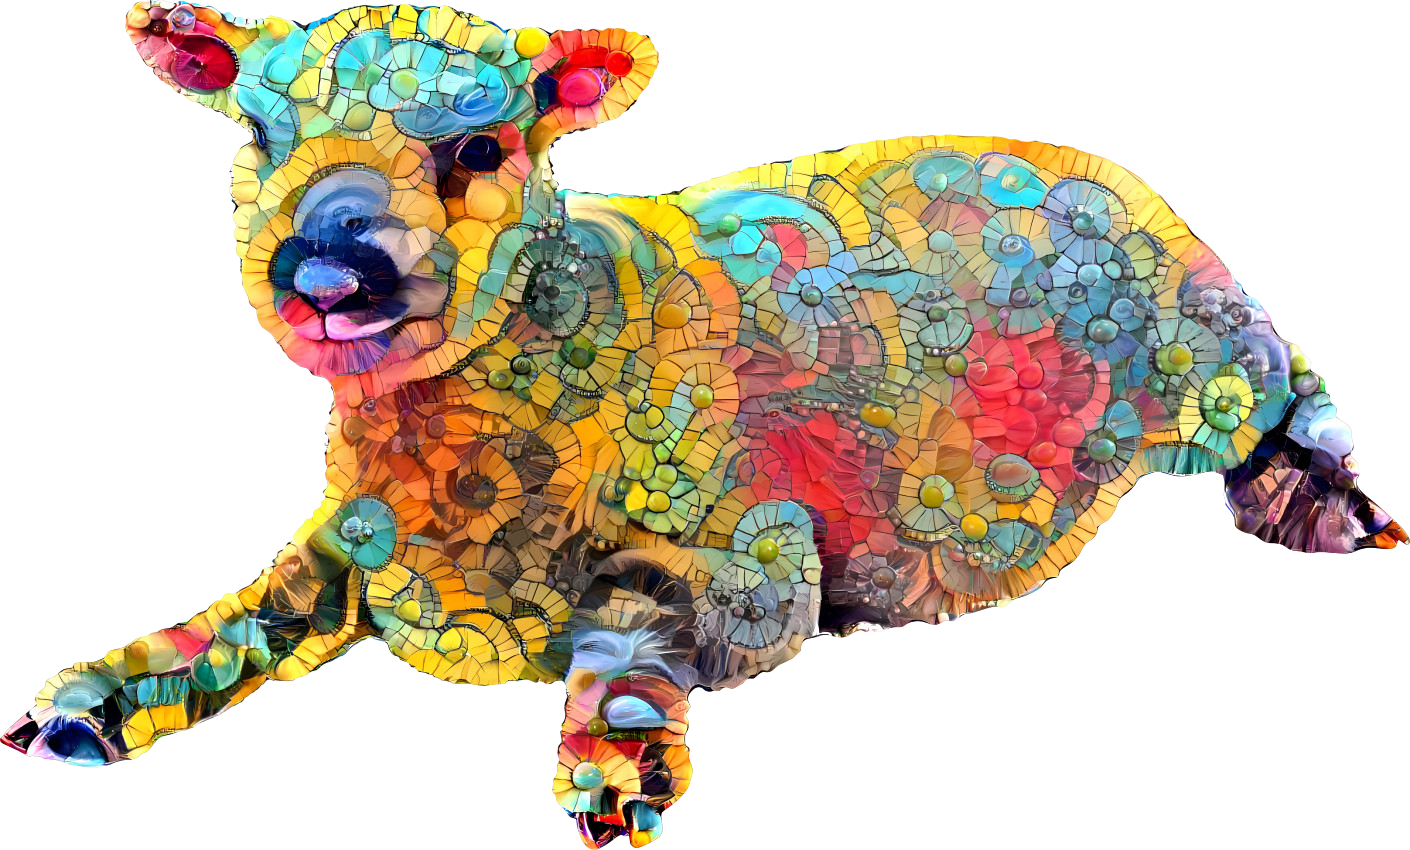 mosaic sheep